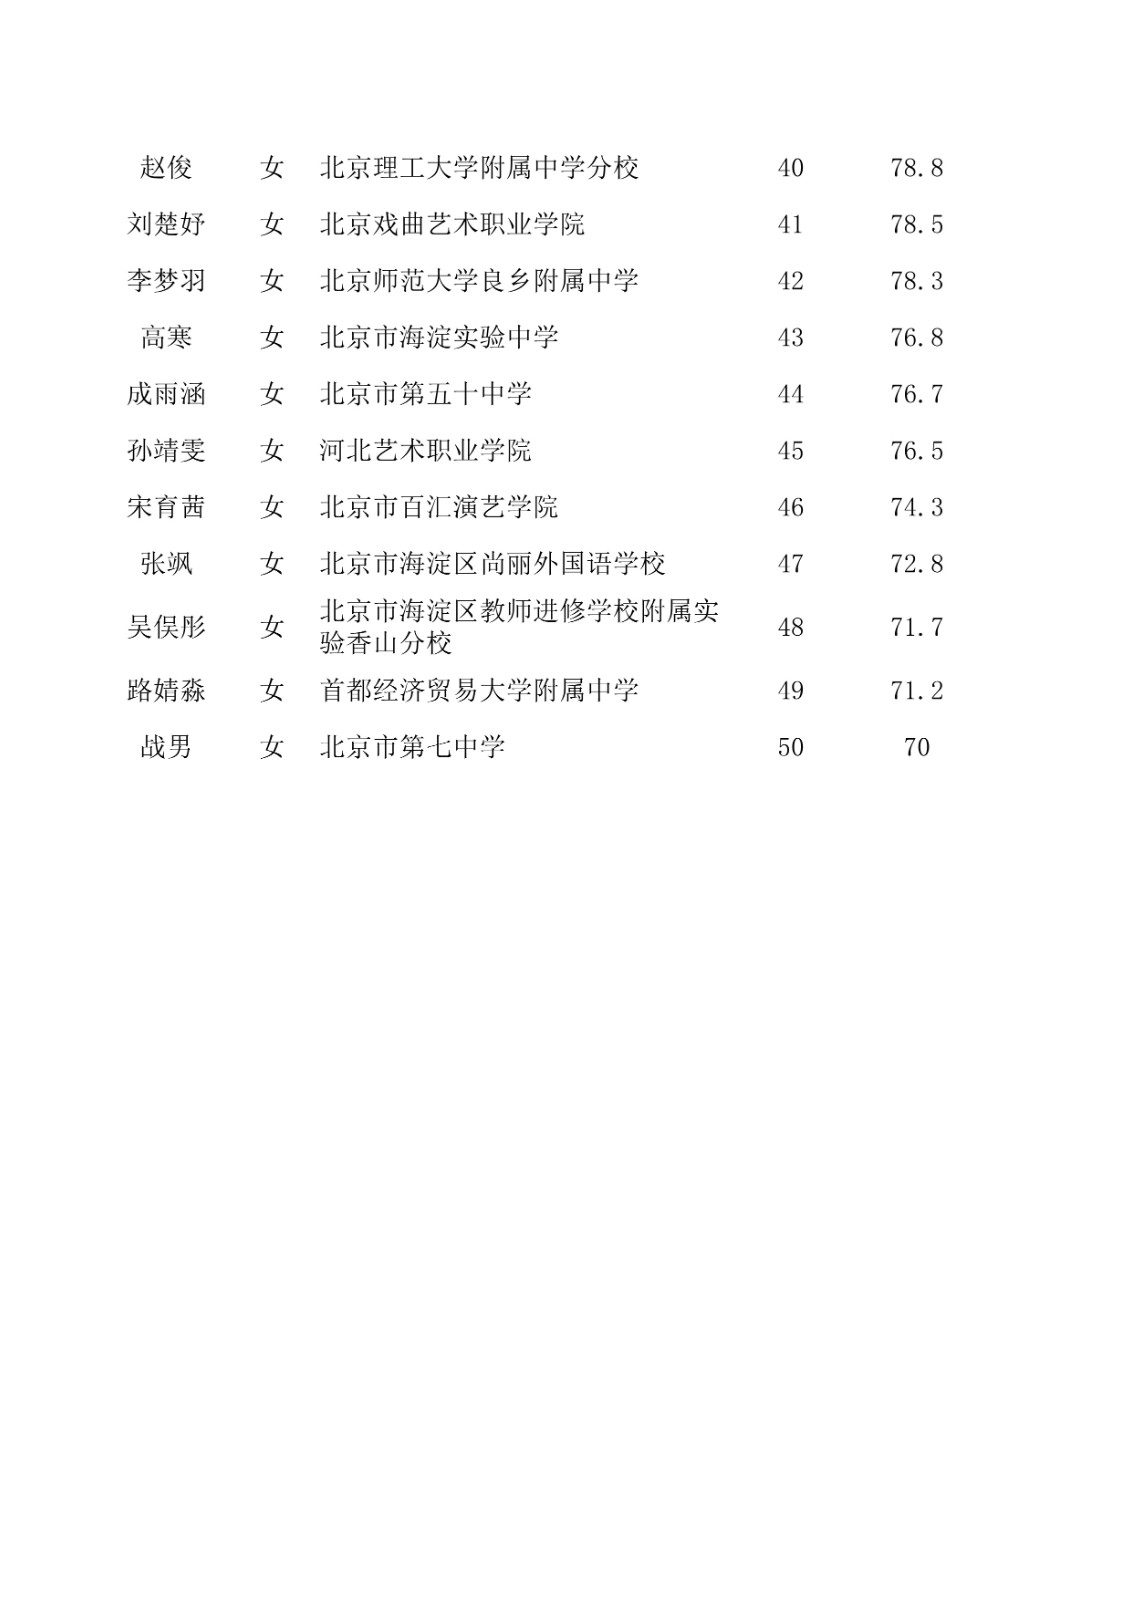 2021年北京舞蹈学院本科招生校考合格名单